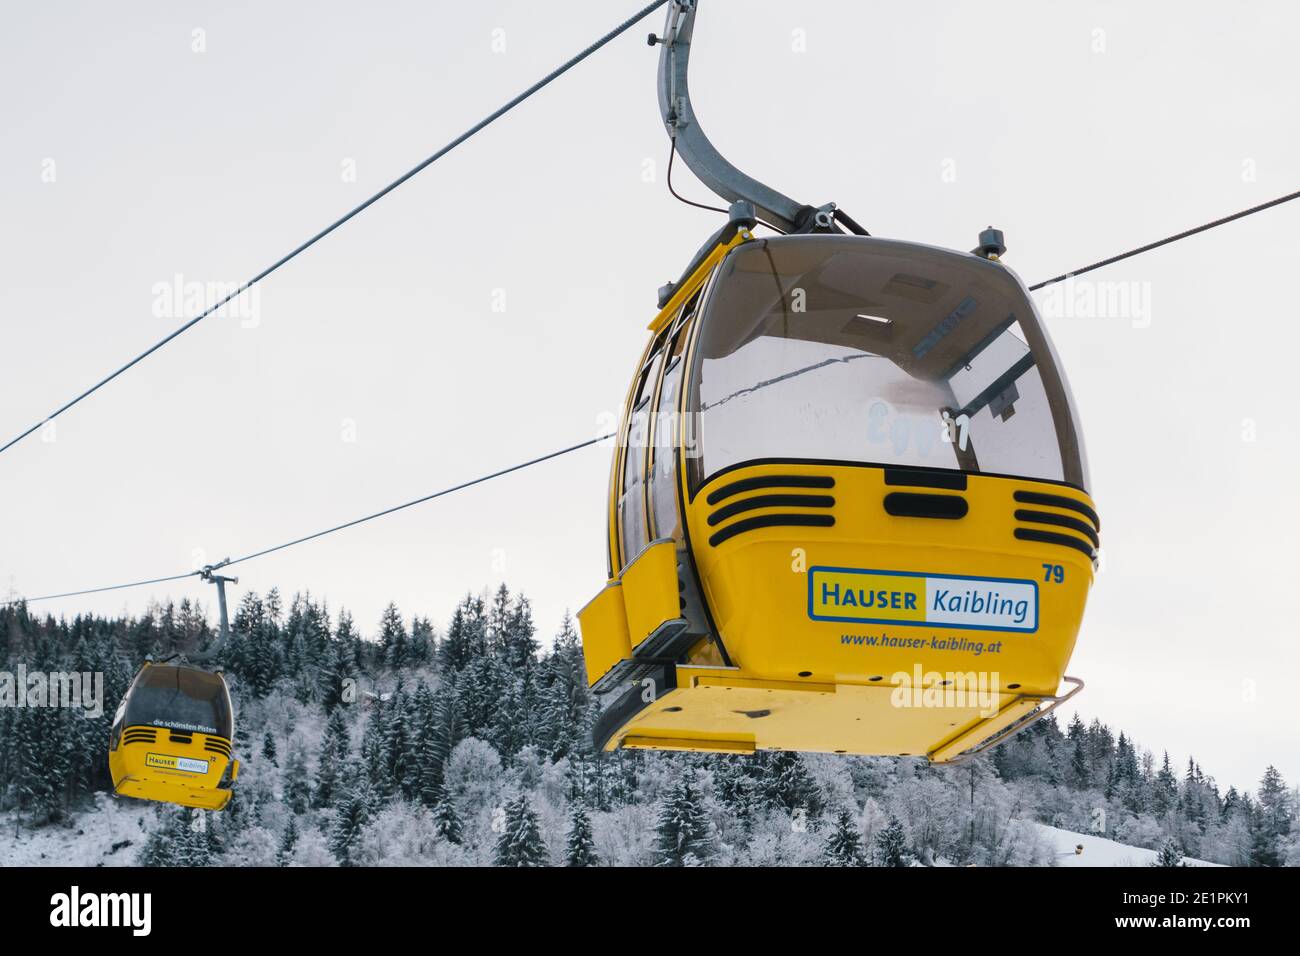 Haus im Ennstal, Österreich - Dezember 29 2020: Hauser Kaibling Yellow Lift 8-Sitzer Gondel mit Logo im Winter. Stockfoto